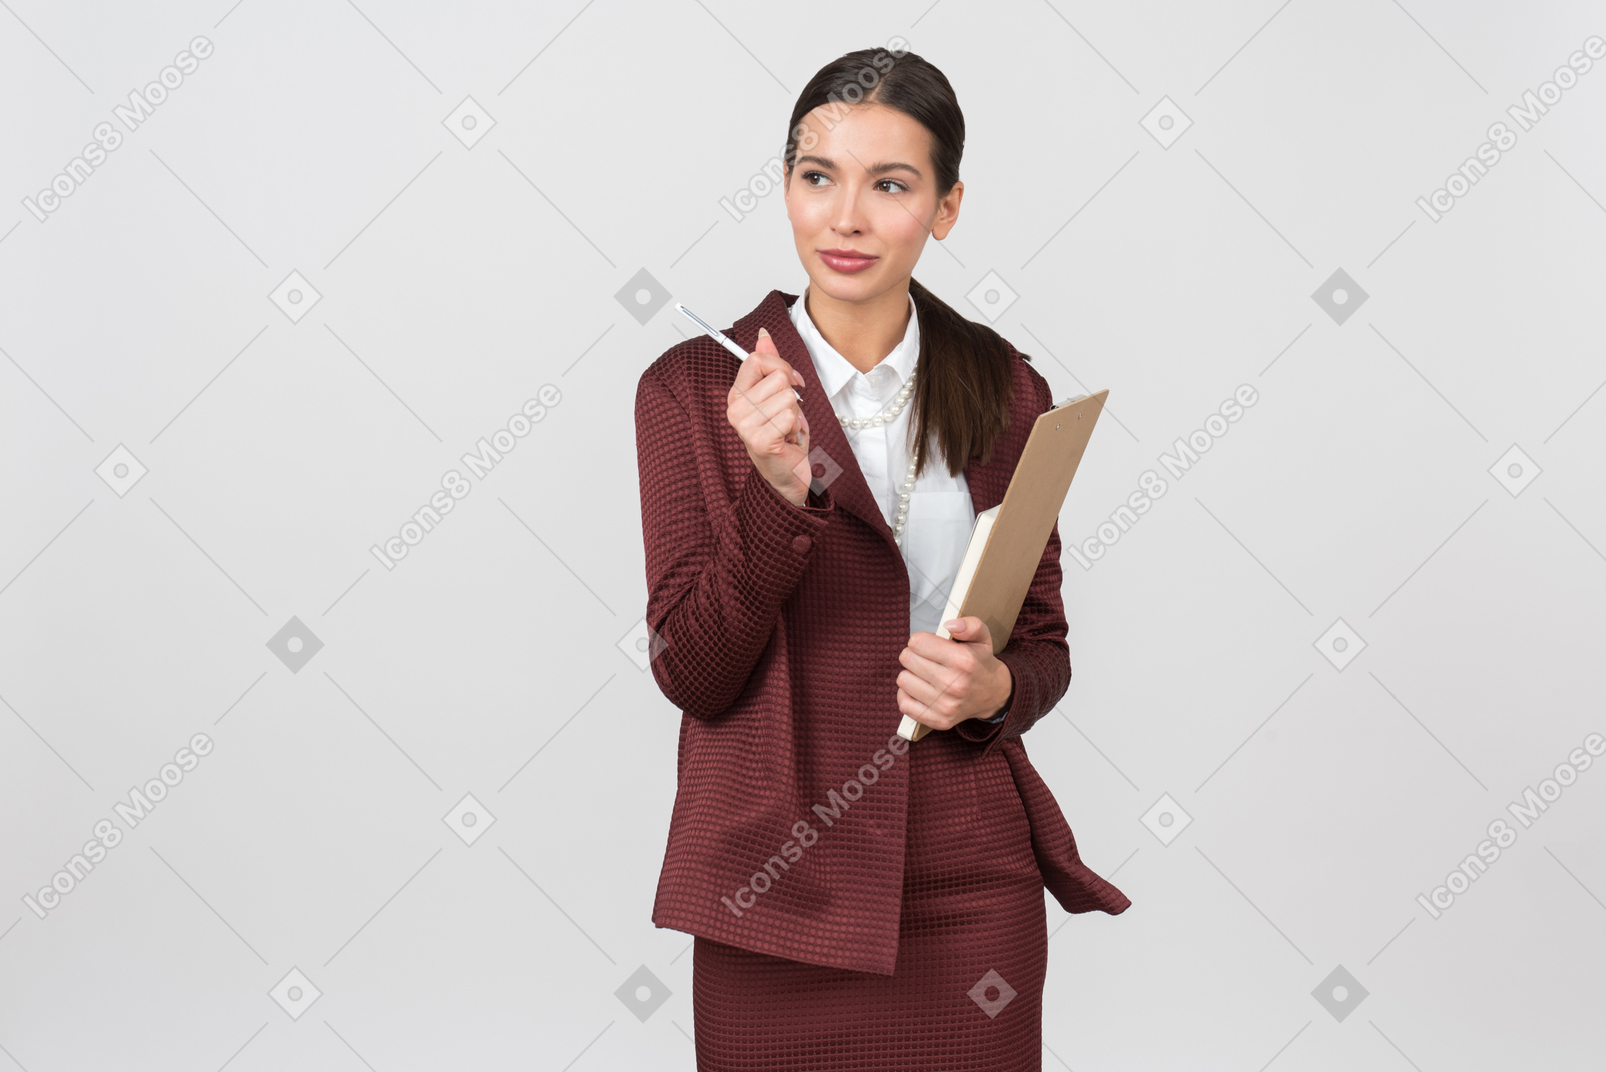 Attraente donna vestita formalmente con una lavagna per appunti che punta a qualcosa